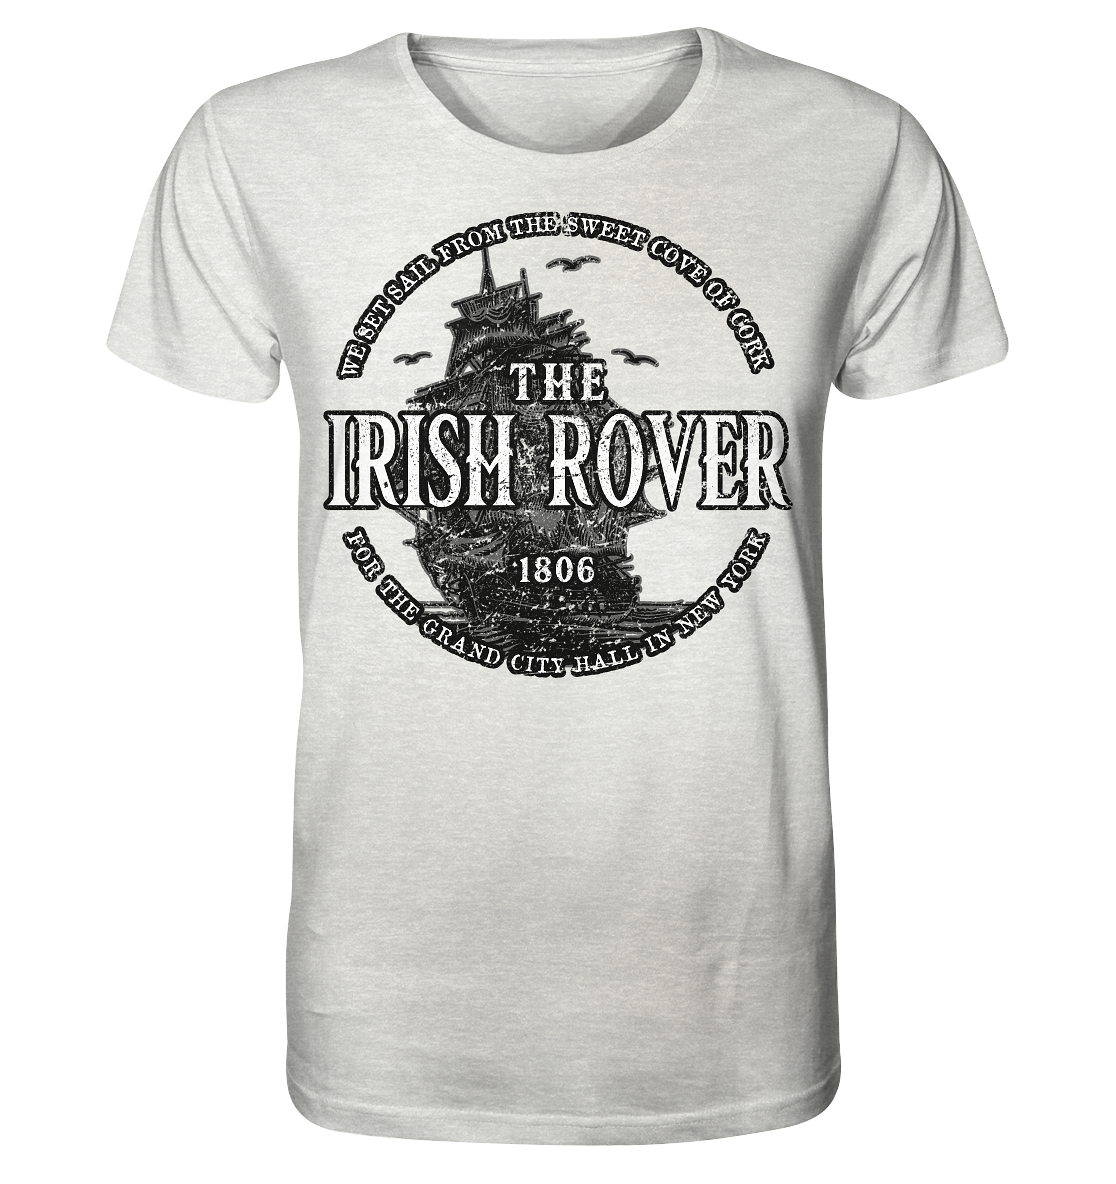 "The Irish Rover" - Organic Shirt (meliert)